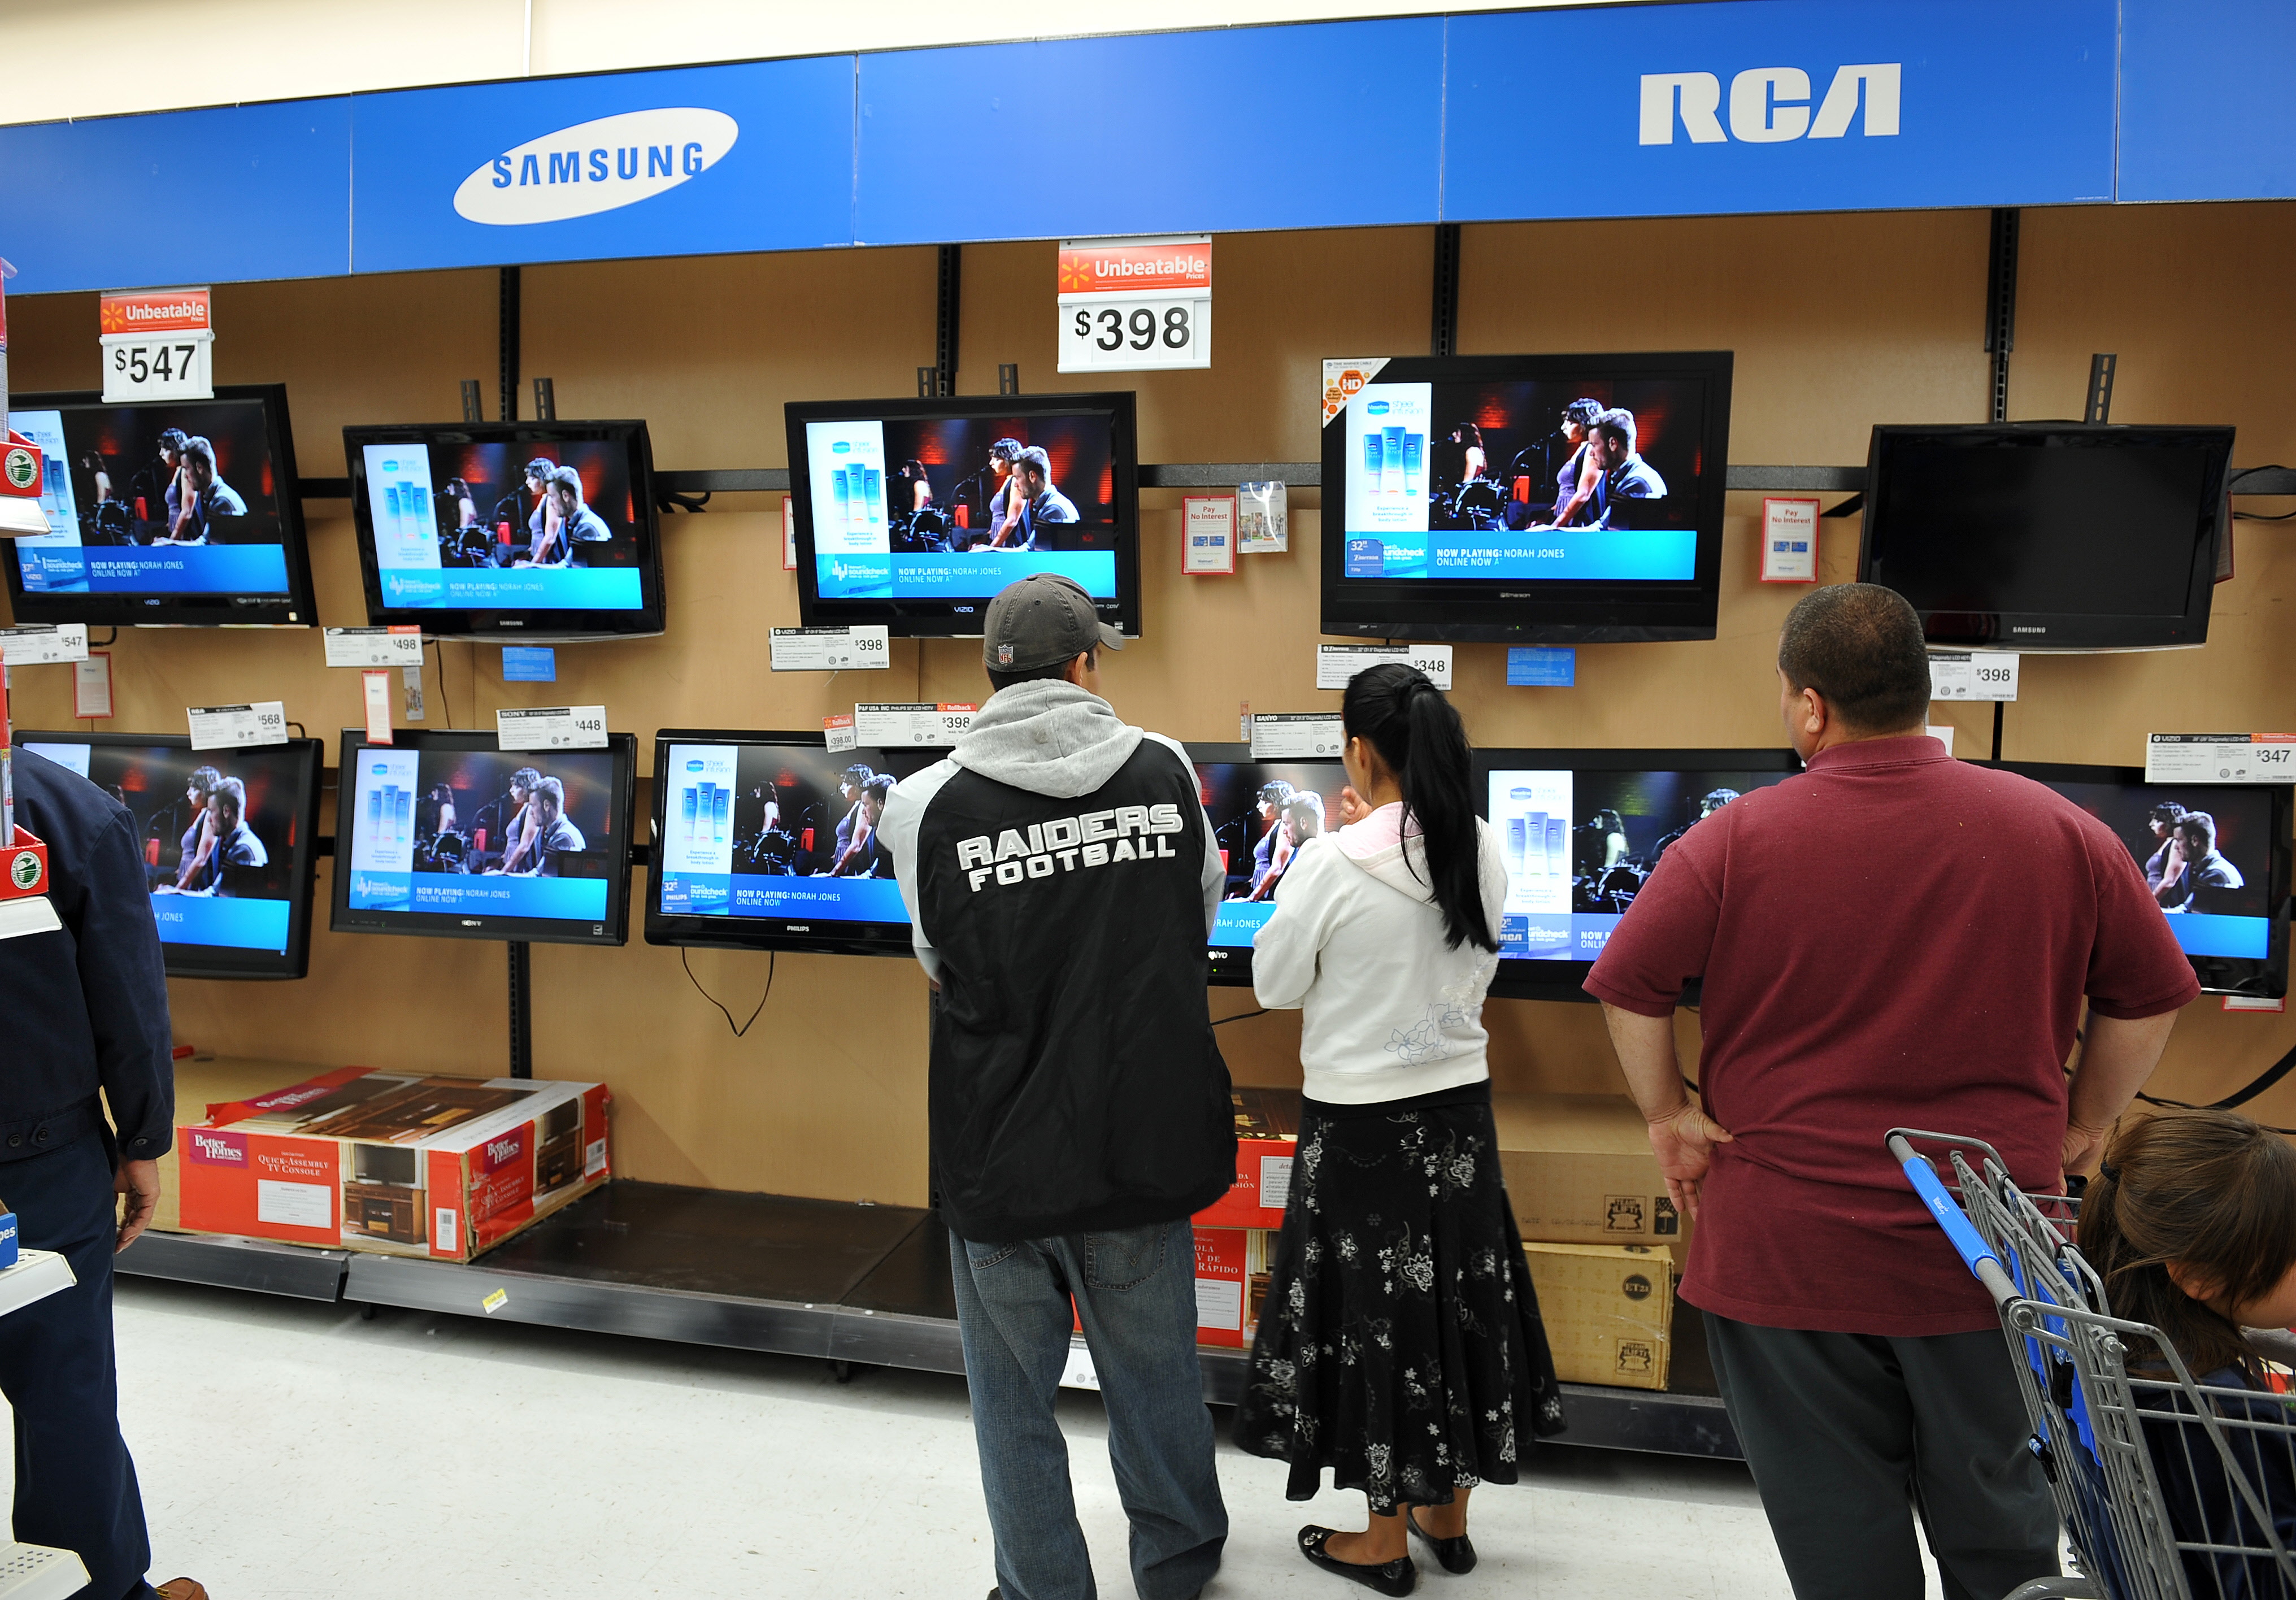 Best TV Deals at Walmart, Best Buy Low Prices on Smart TVs Money